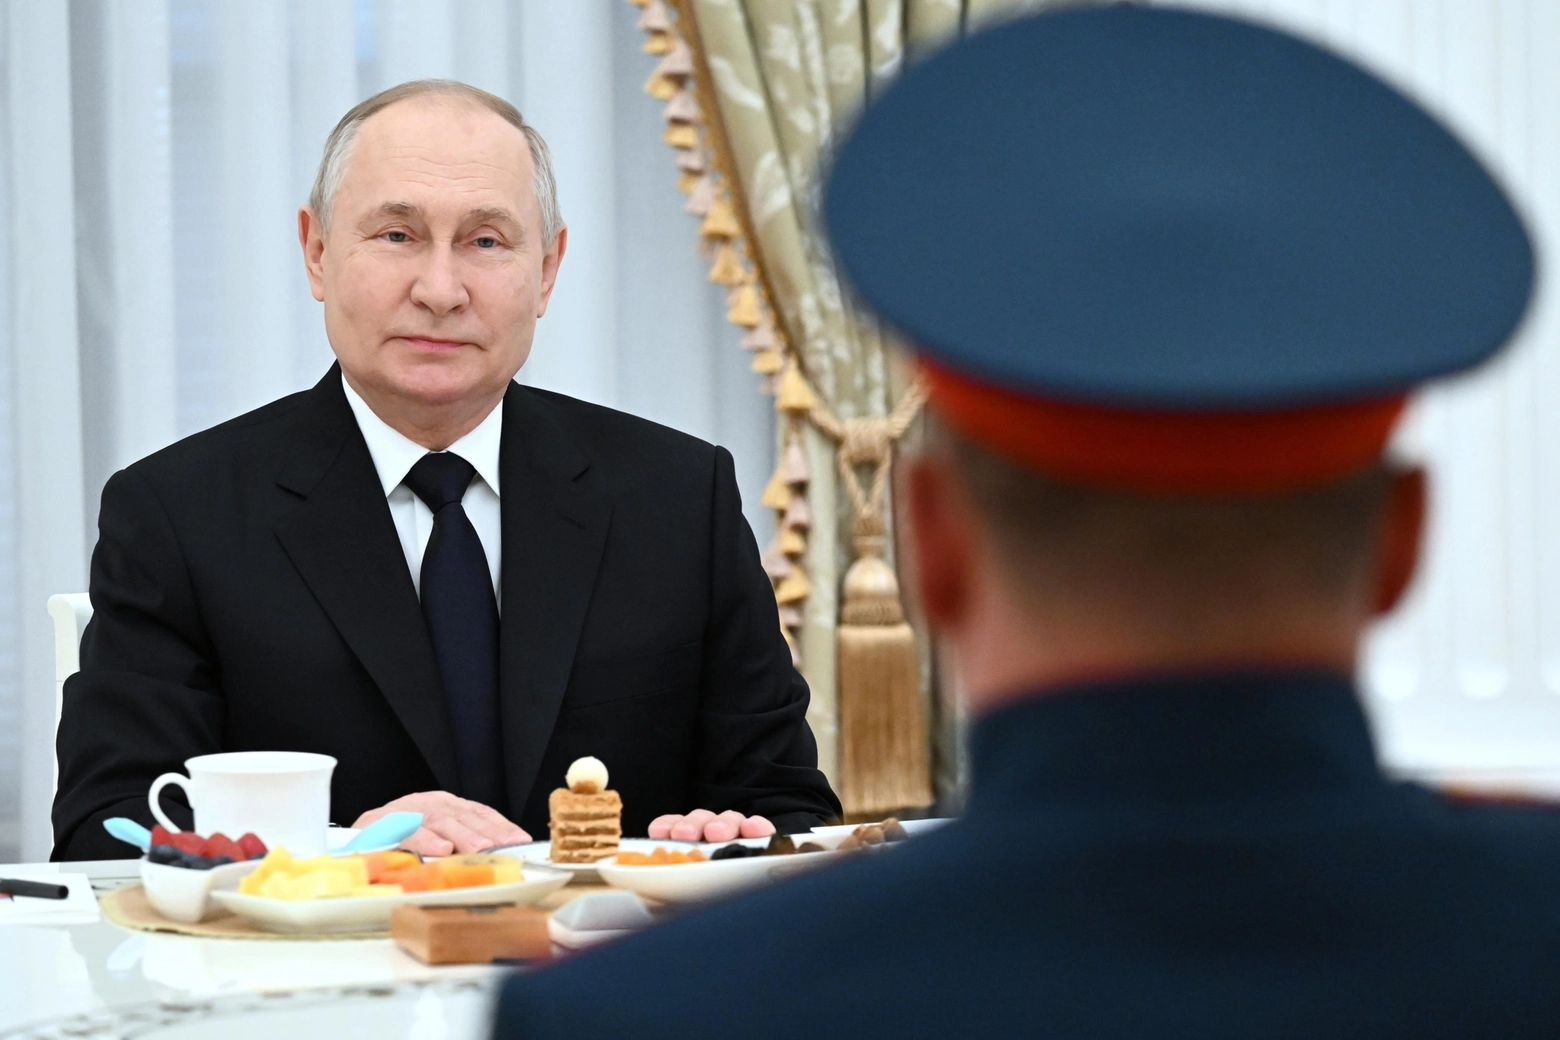 Putin e la guerra psicologica all'Occidente: per l'esperto è una minaccia gravissima, da disinnescare